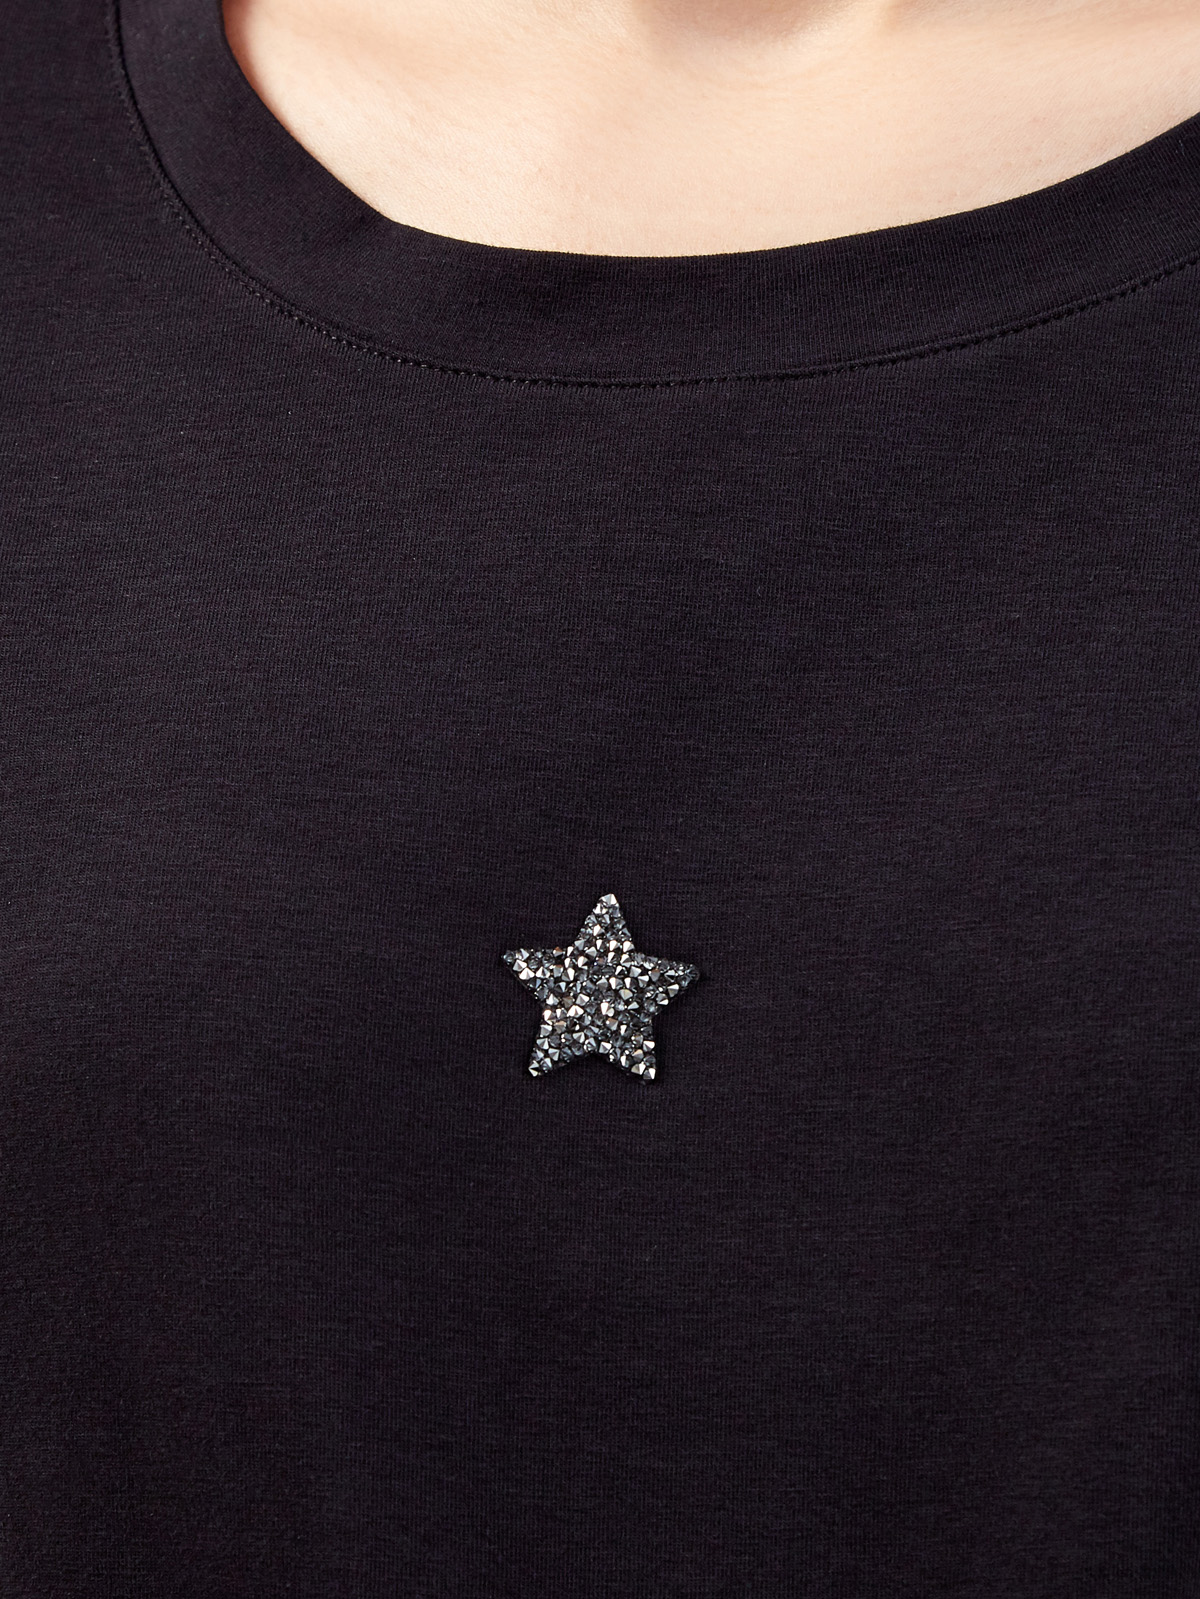 Черная футболка из хлопка джерси с символикой из кристаллов Swarovski LORENA ANTONIAZZI, цвет черный, размер 40;42;44;46 - фото 5